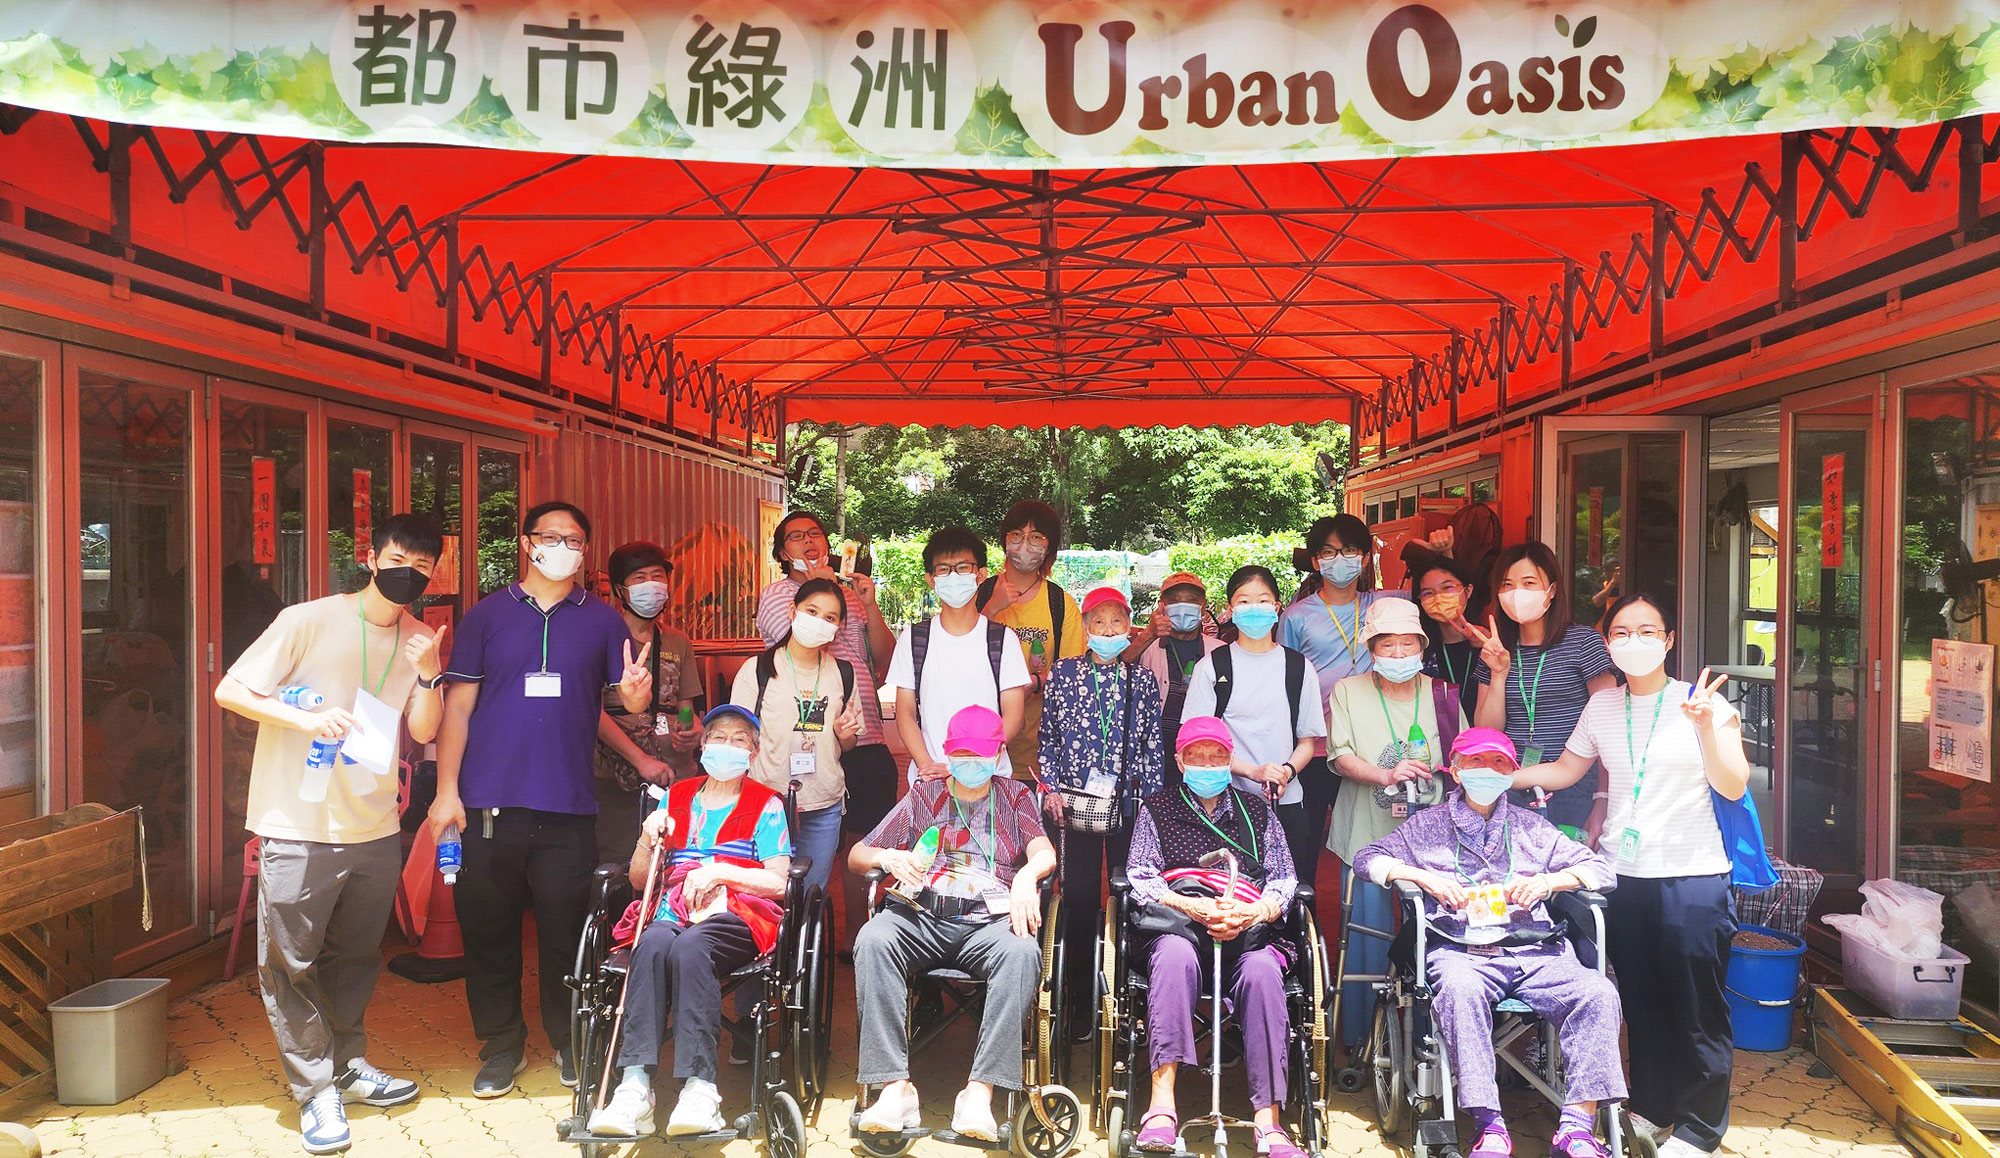 Volunteering @ Urban Oasis